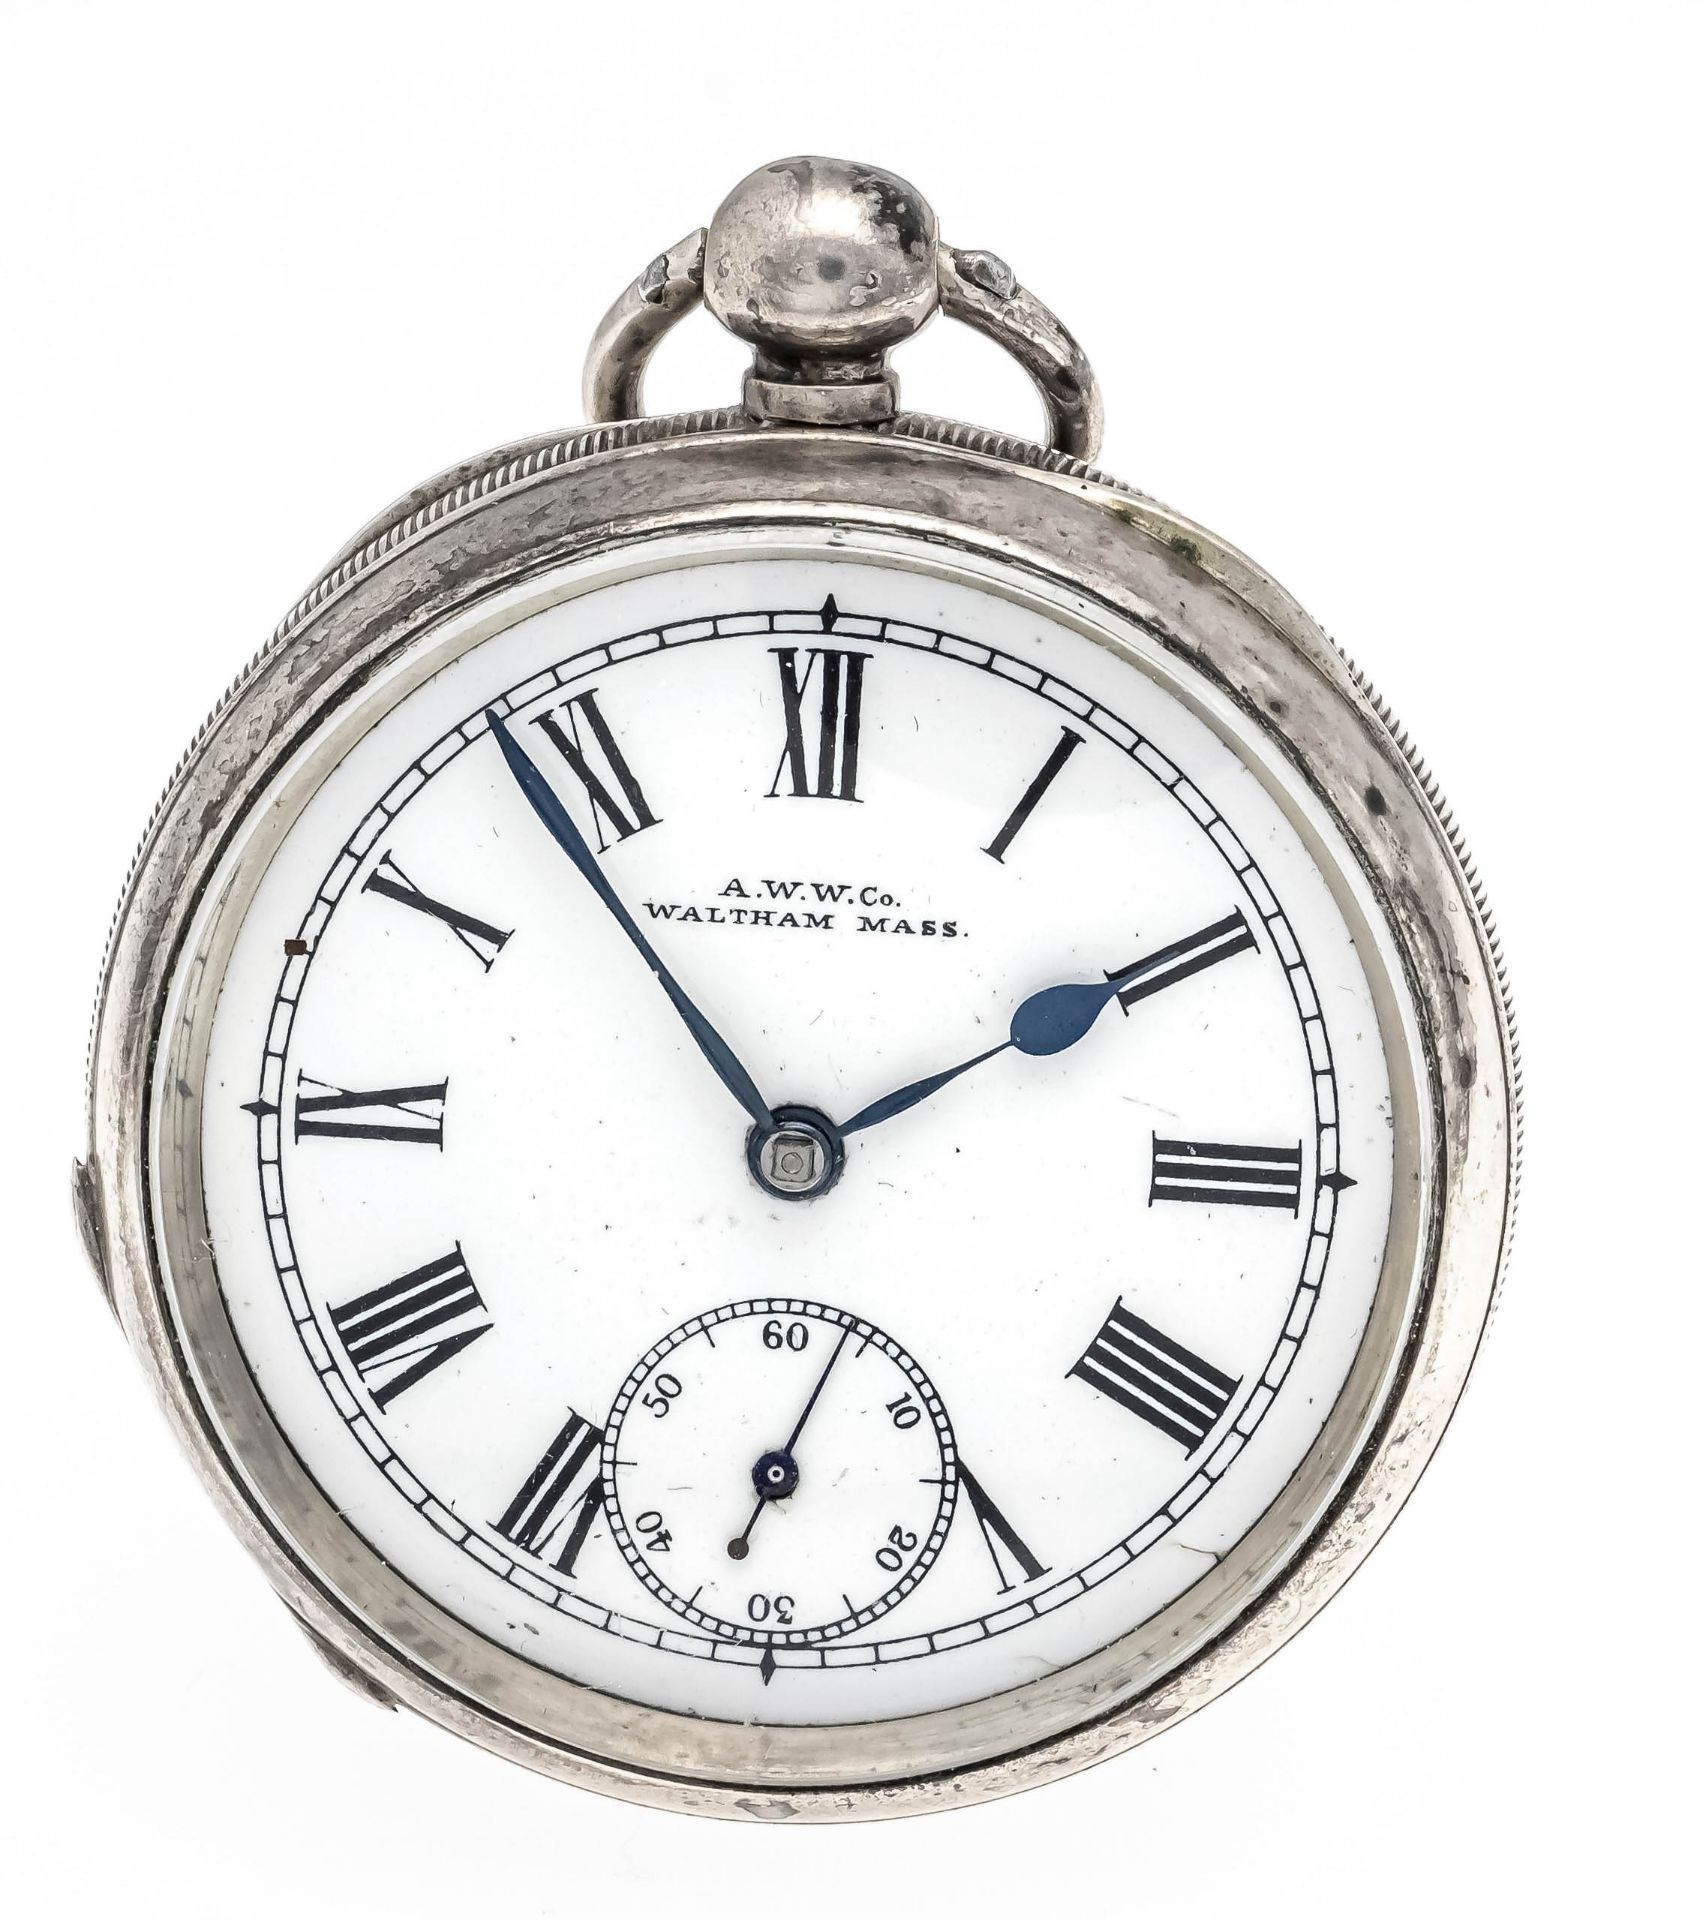 Pocket watch in pocket watch frame, silver, pocket watch by A.W.W. Co. & Waltham Mass, silver